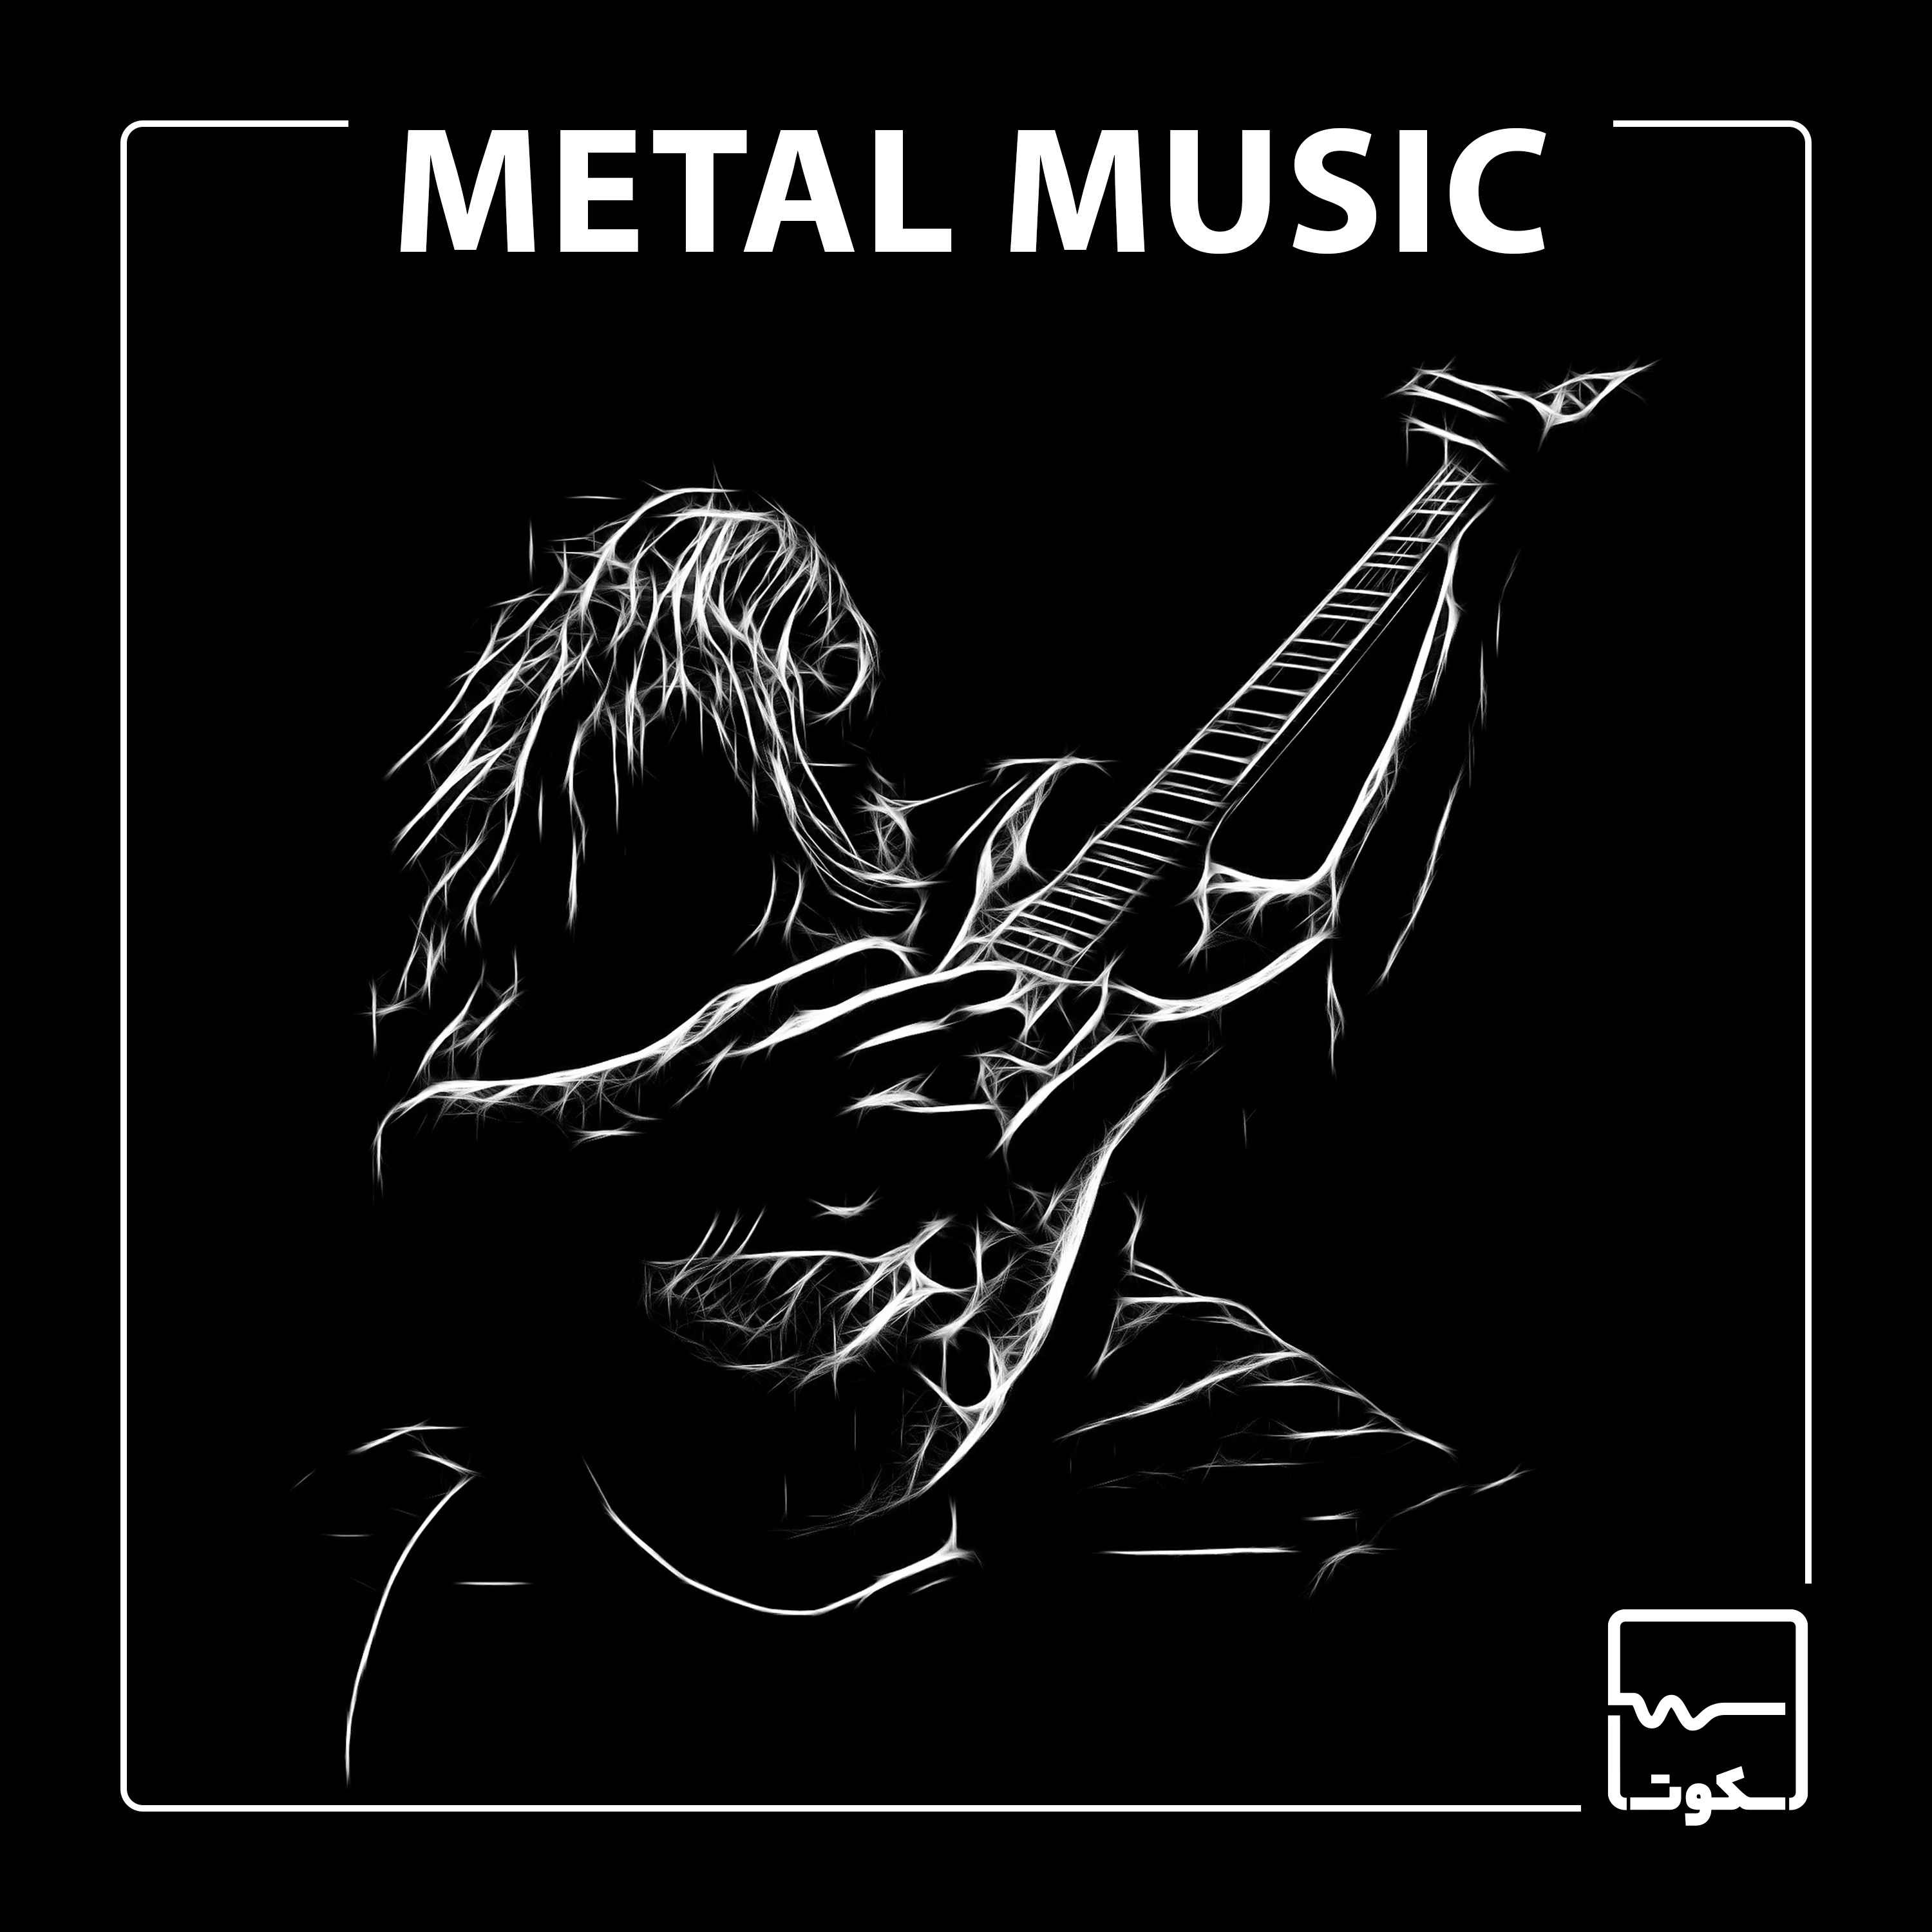 اپیزود هجدهم: موسیقی متال